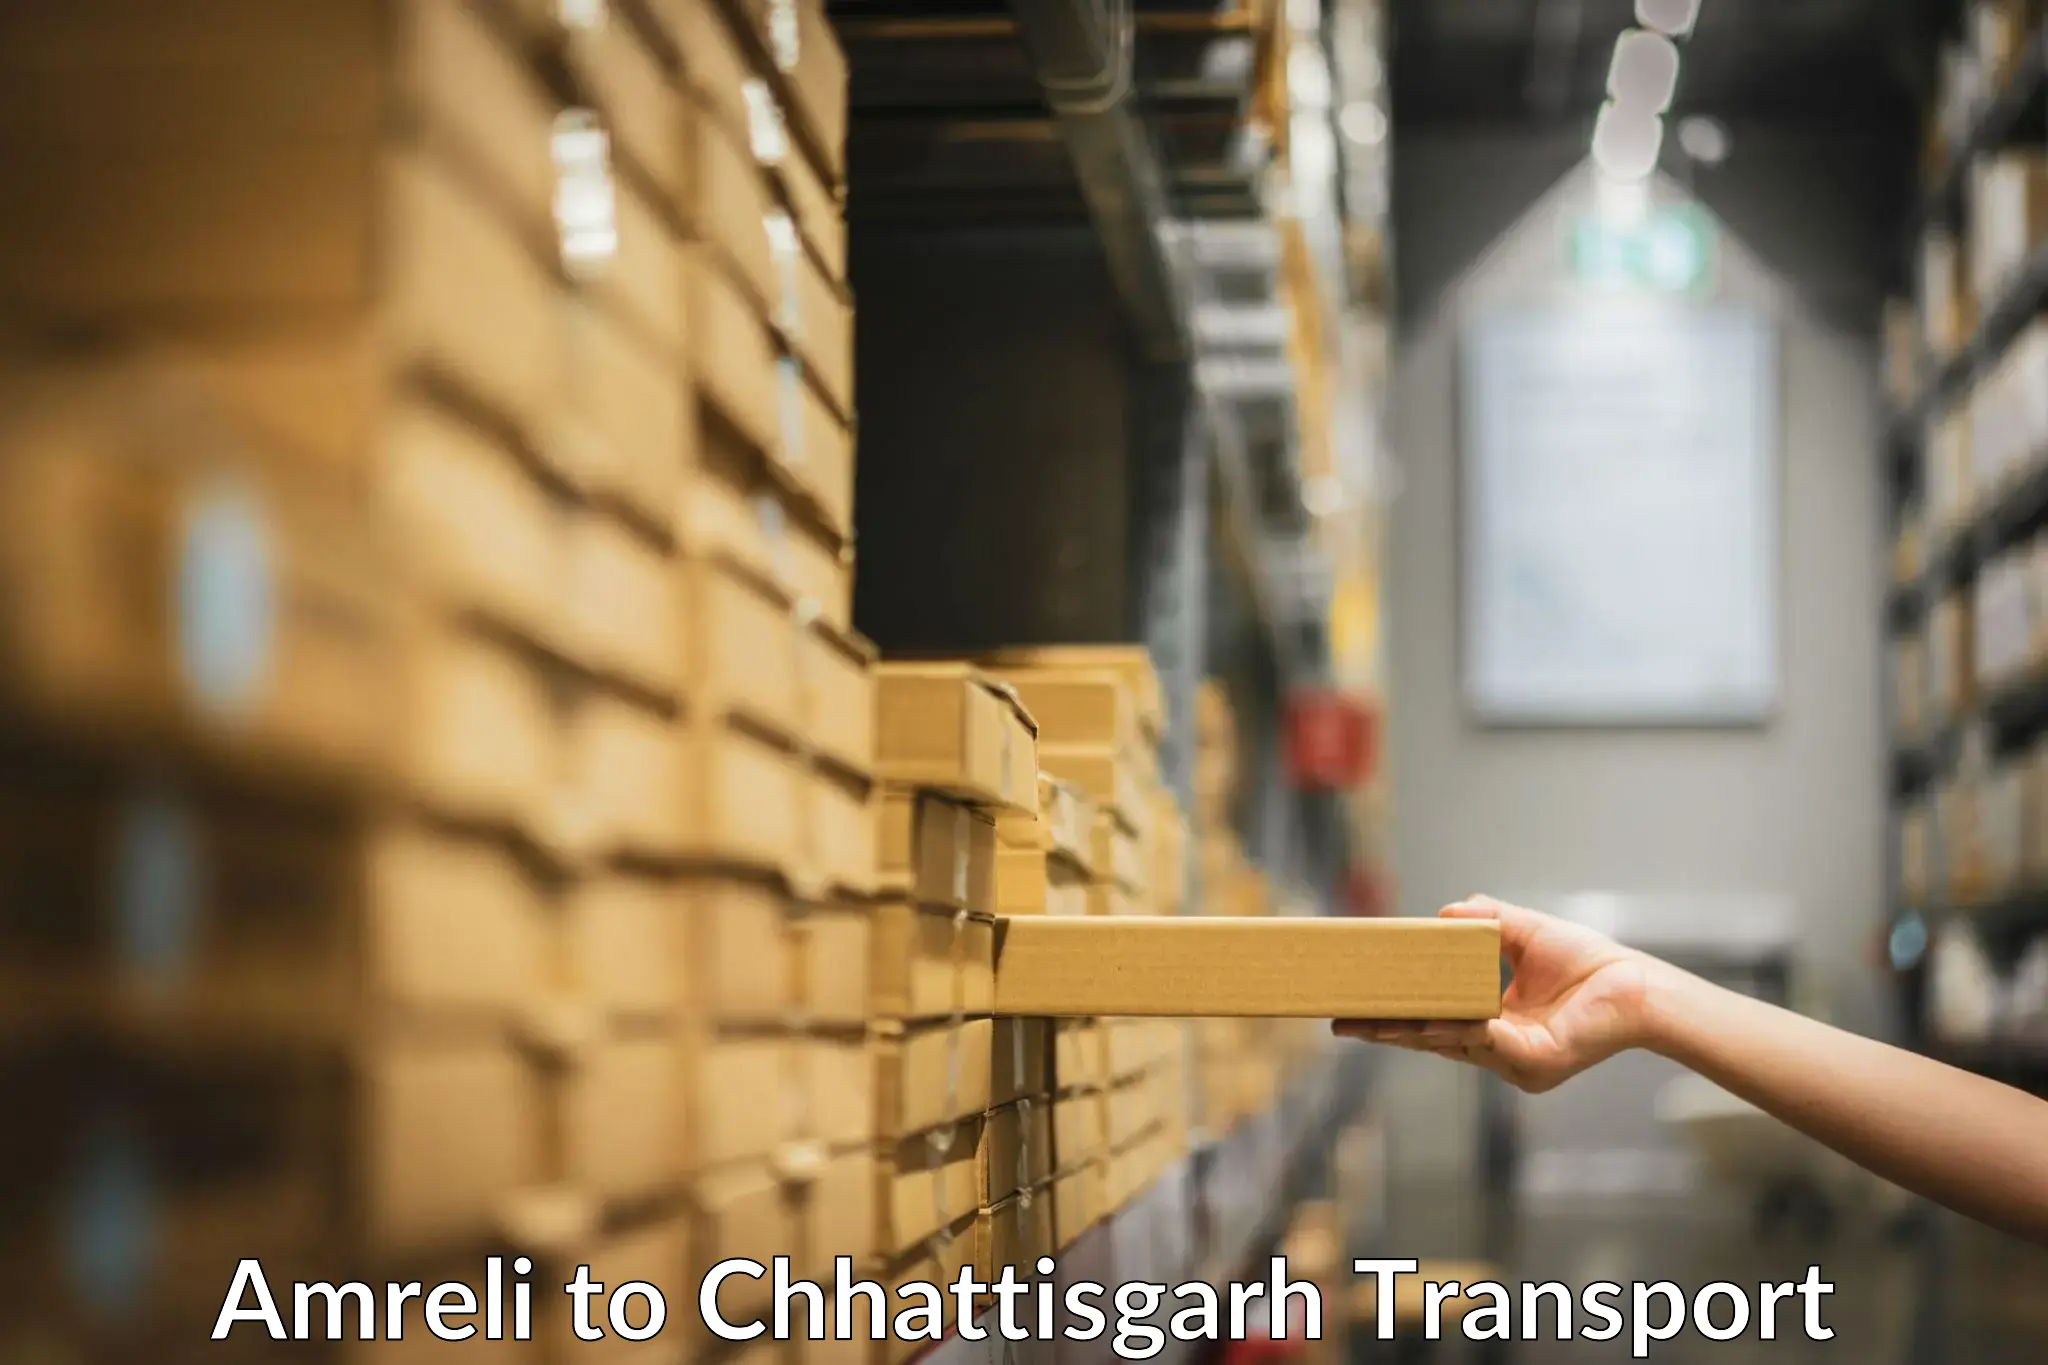 Shipping partner Amreli to Patna Chhattisgarh